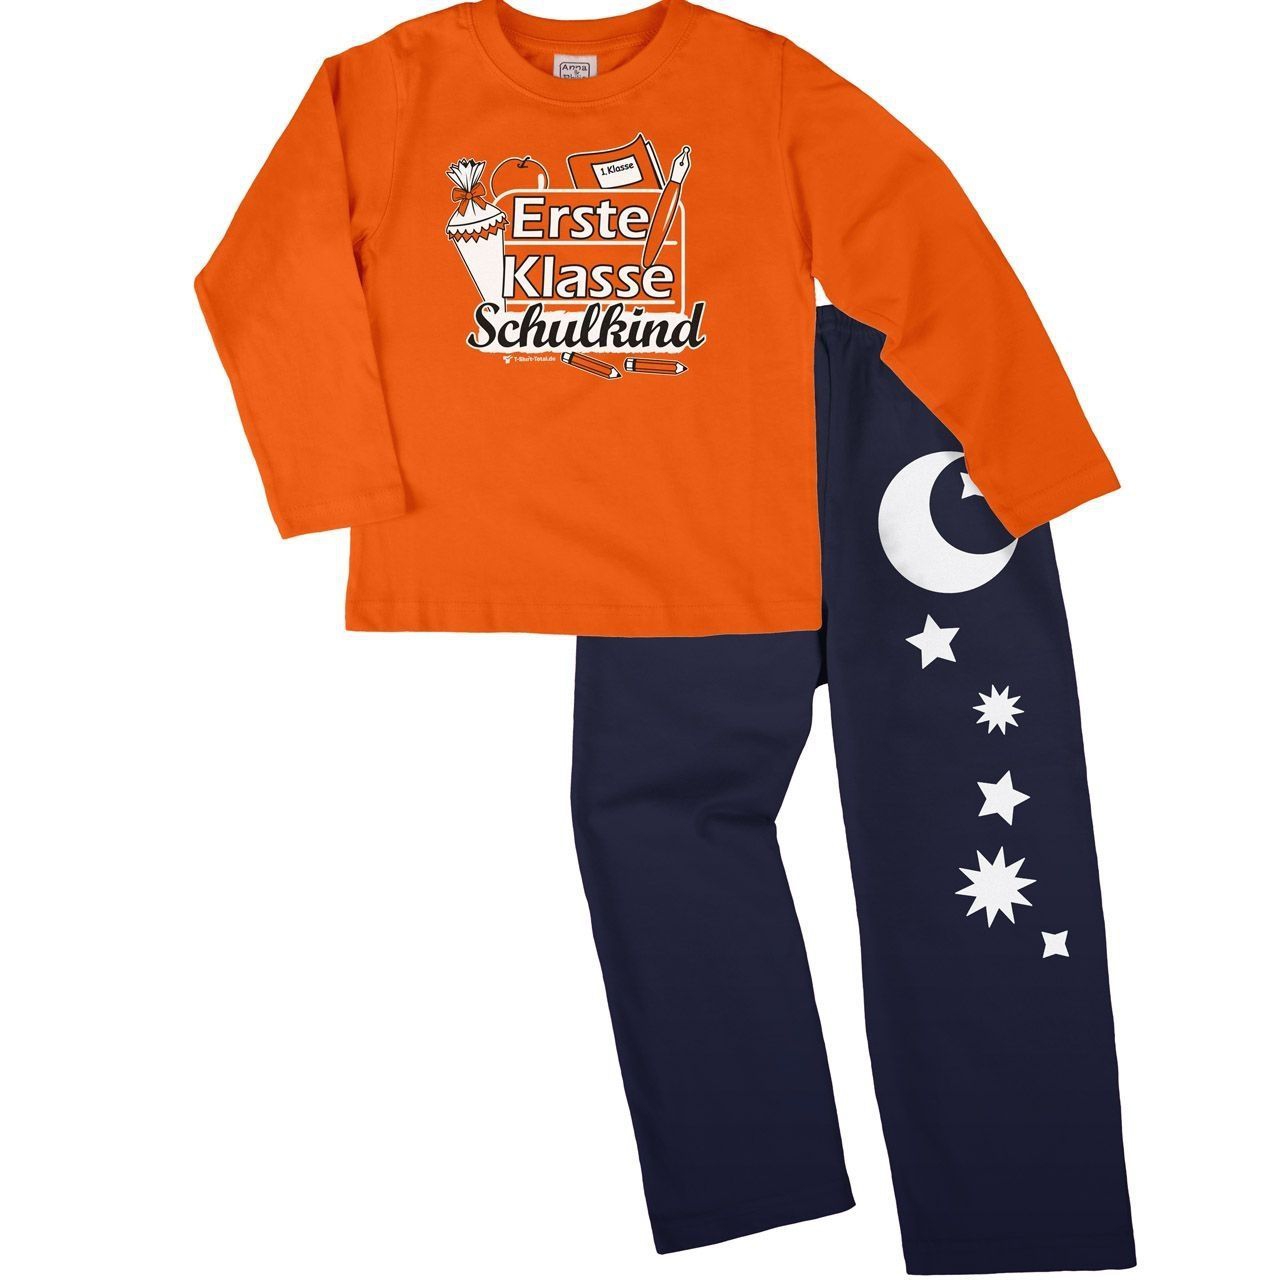 Erste Klasse Schulkind Pyjama Set orange / navy 122 / 128